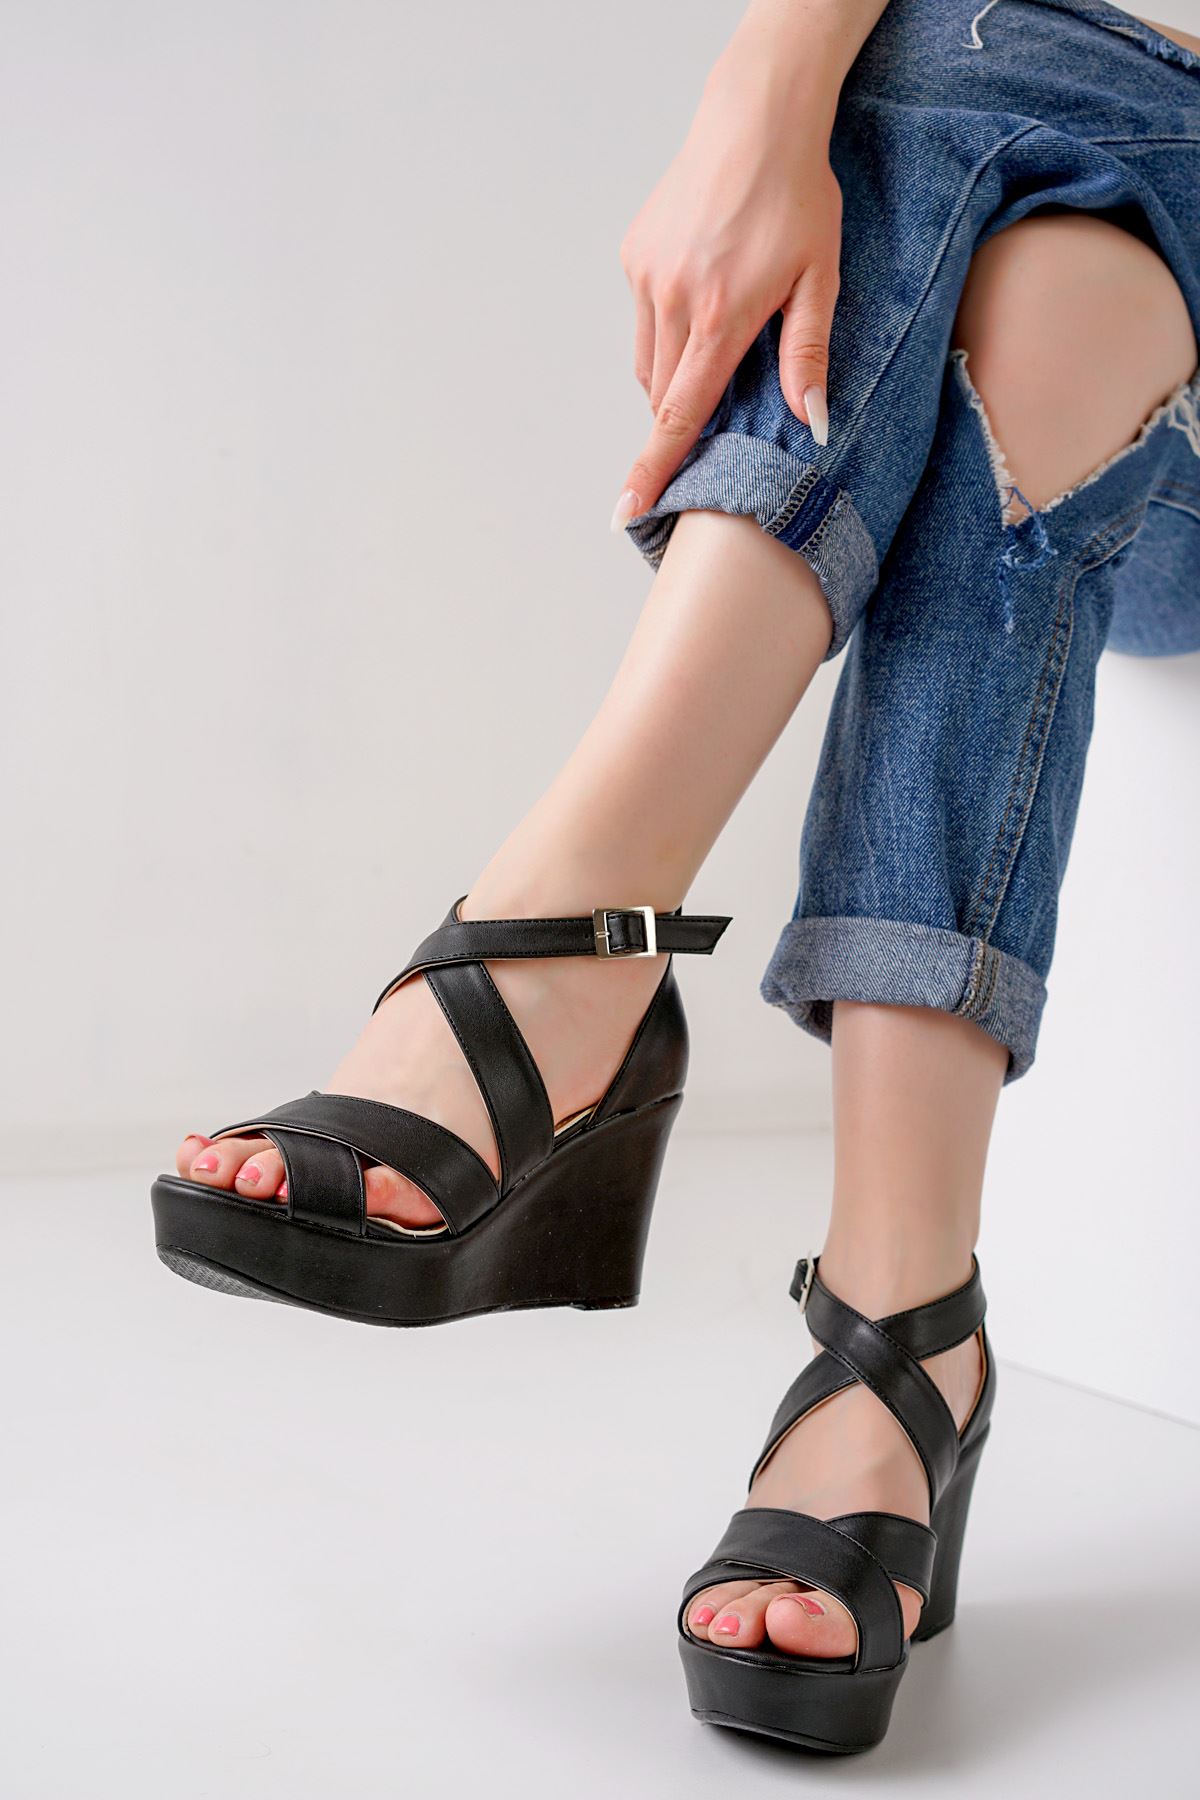 Flory Siyah Dolgu Topuklu Kadın Ayakkabı